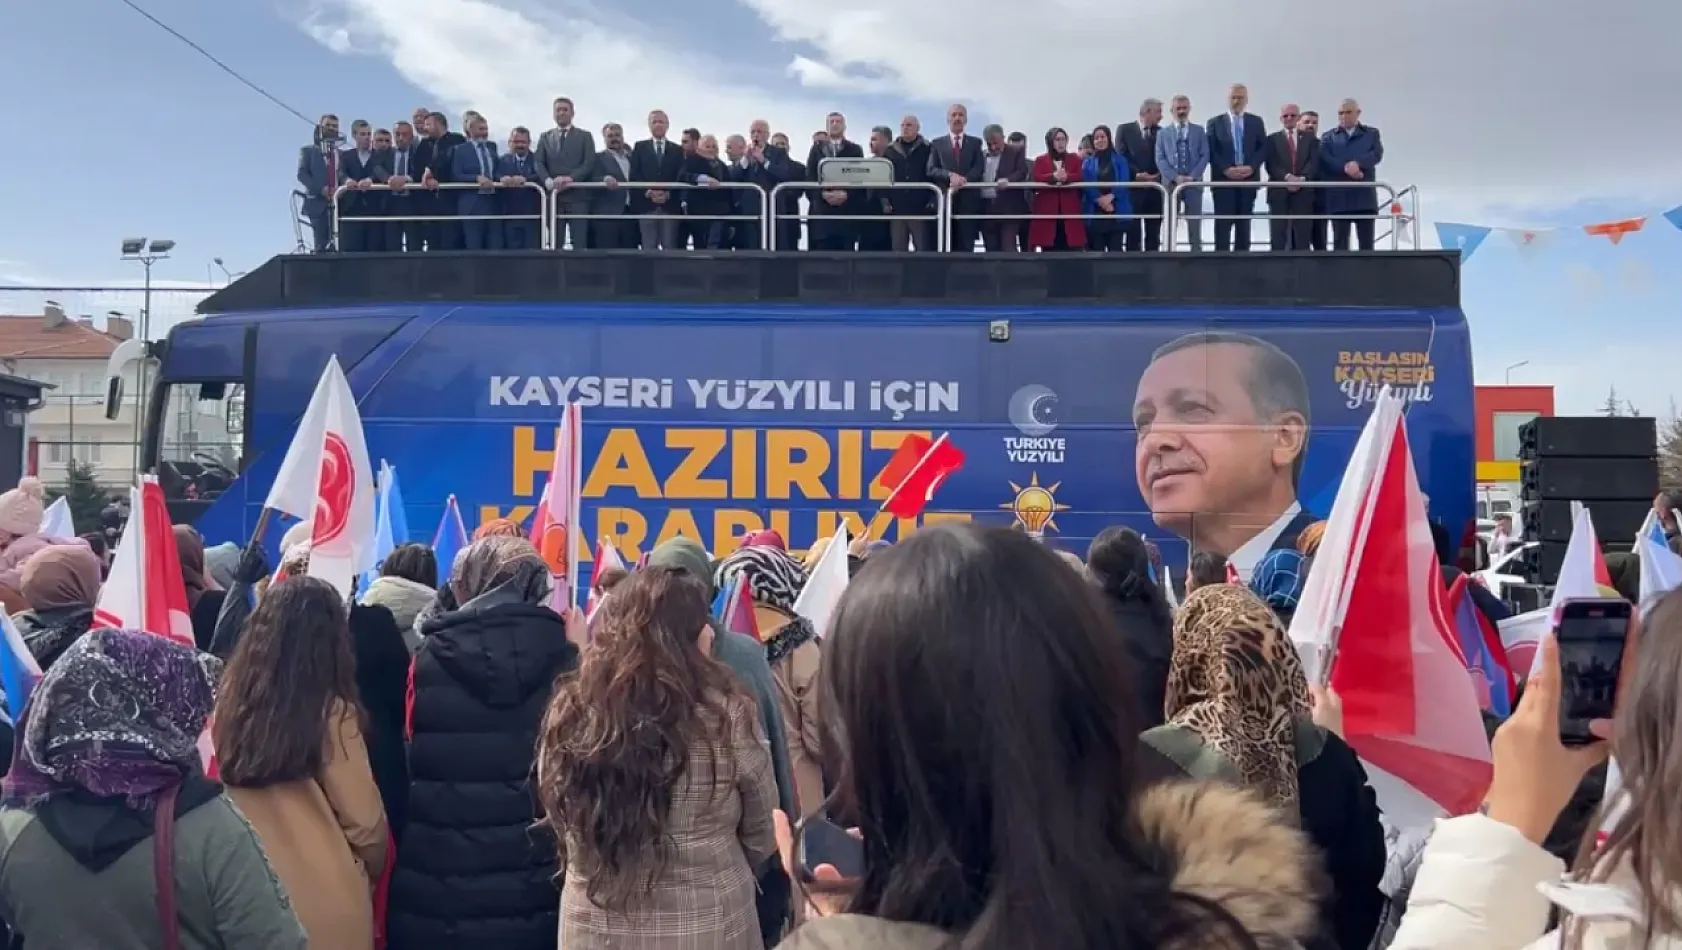 Elitaş, Kayseri'de Erdoğan'ın makas sayısını açıkladı